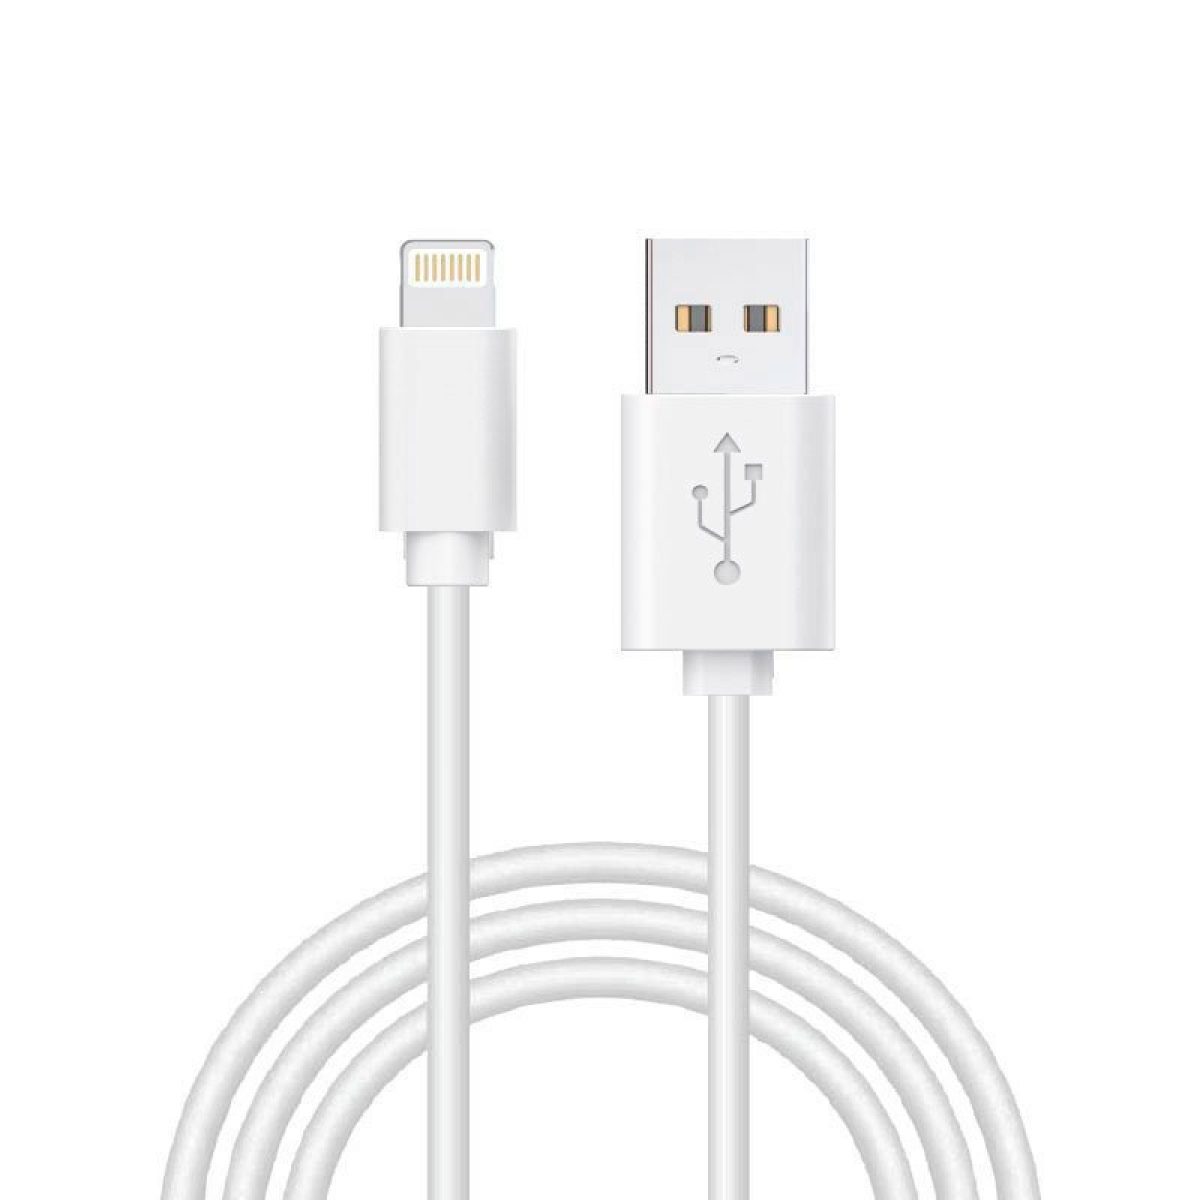 Câble de chargeur USB pour iPhone 4 et iPad 1ère génération